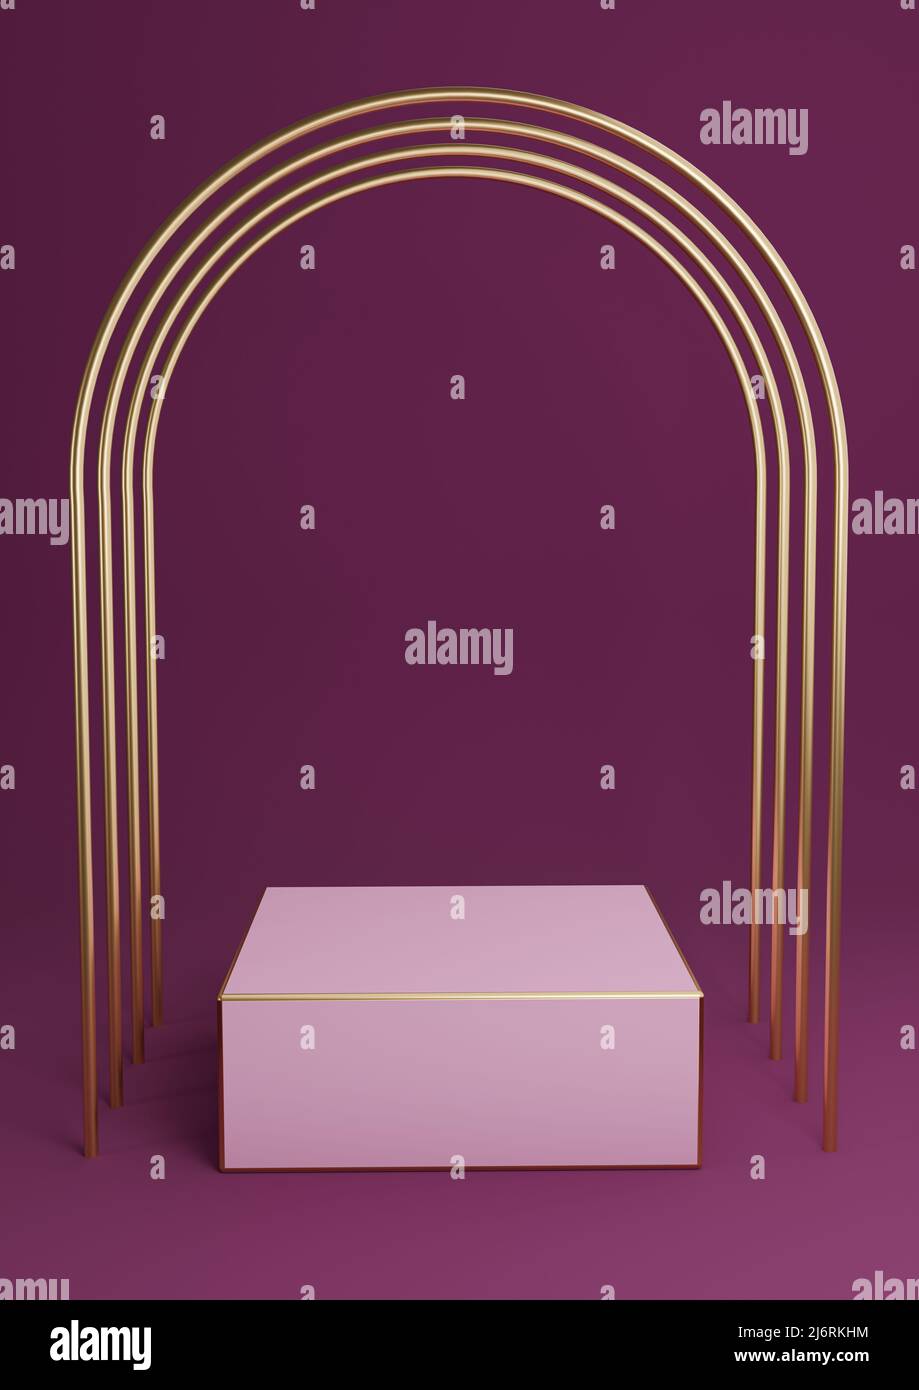 Magenta foncé, violet 3D rendant minimal présentoir de produits podium ou stand avec arches or de luxe et lignes dorées. Résumé de fond simple co Banque D'Images